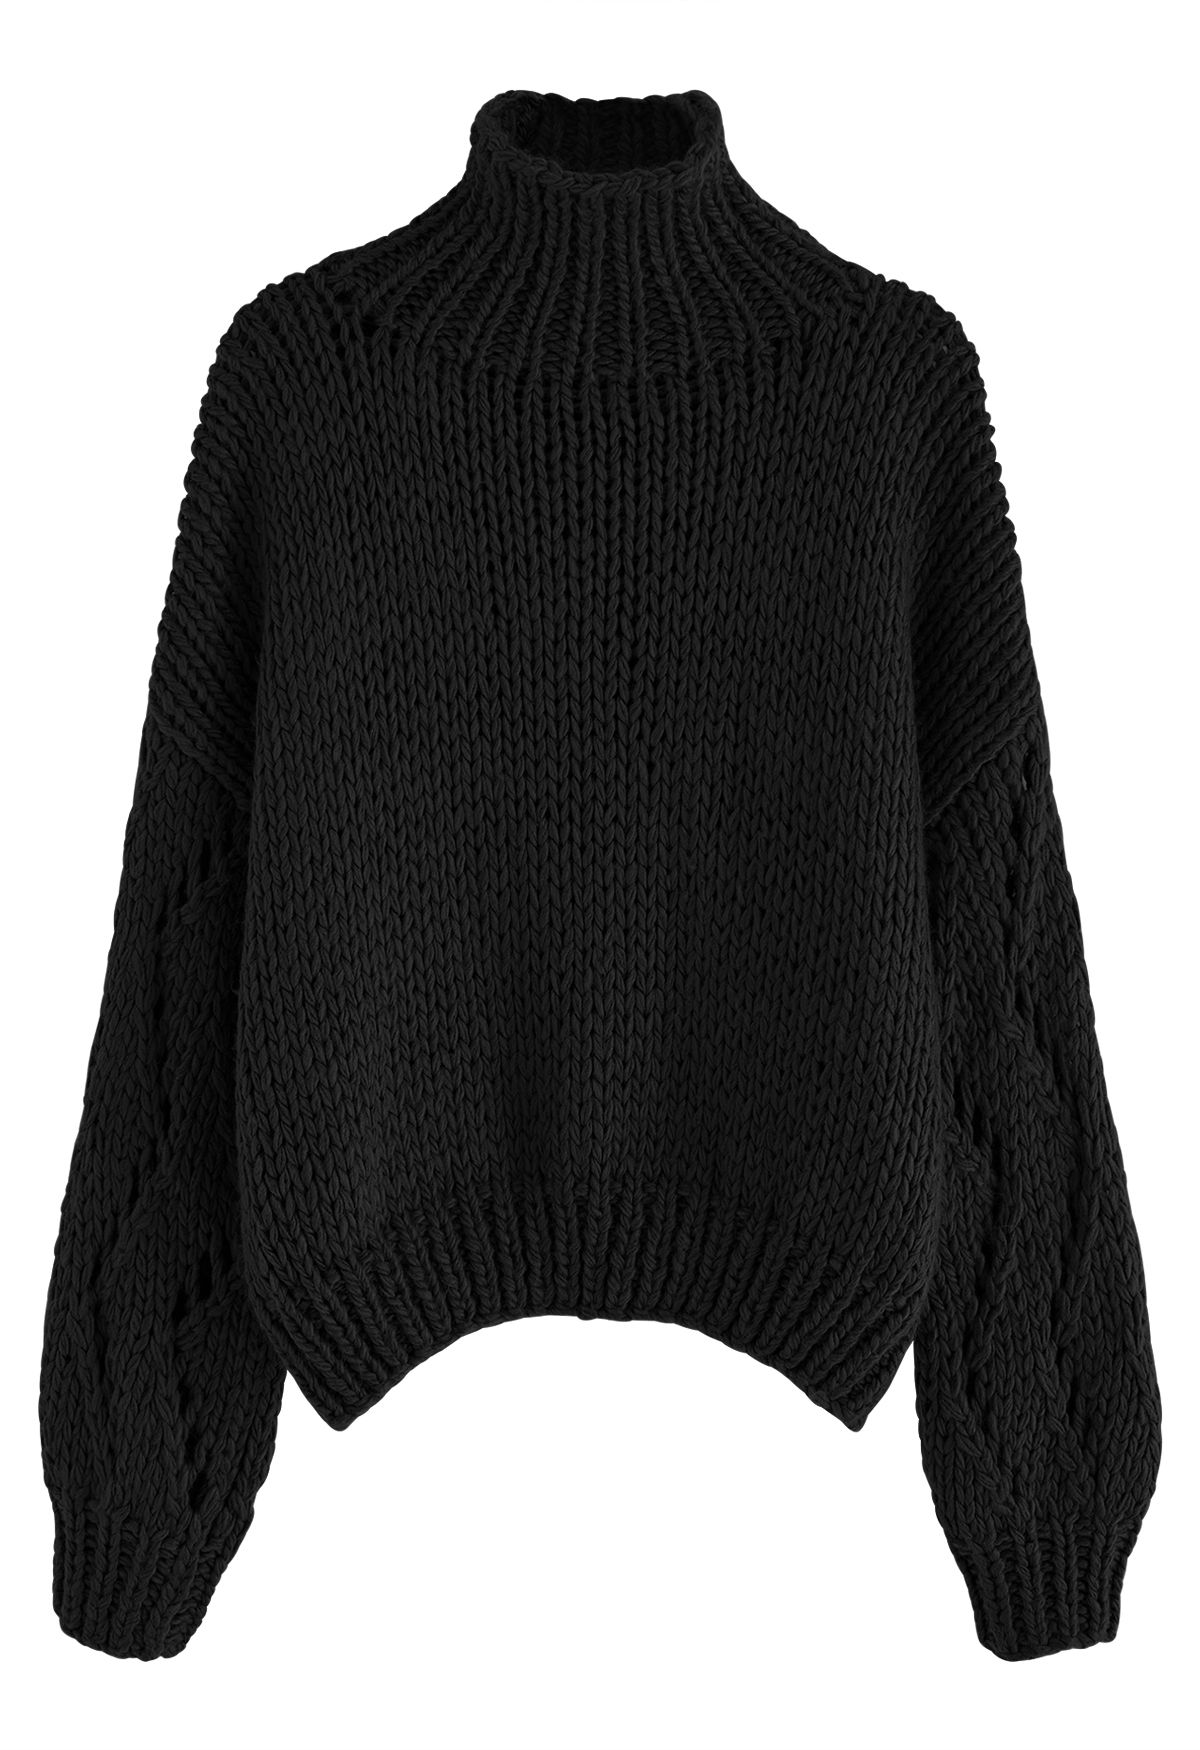 Suéter tejido a mano con cuello alto y manga pointelle en negro